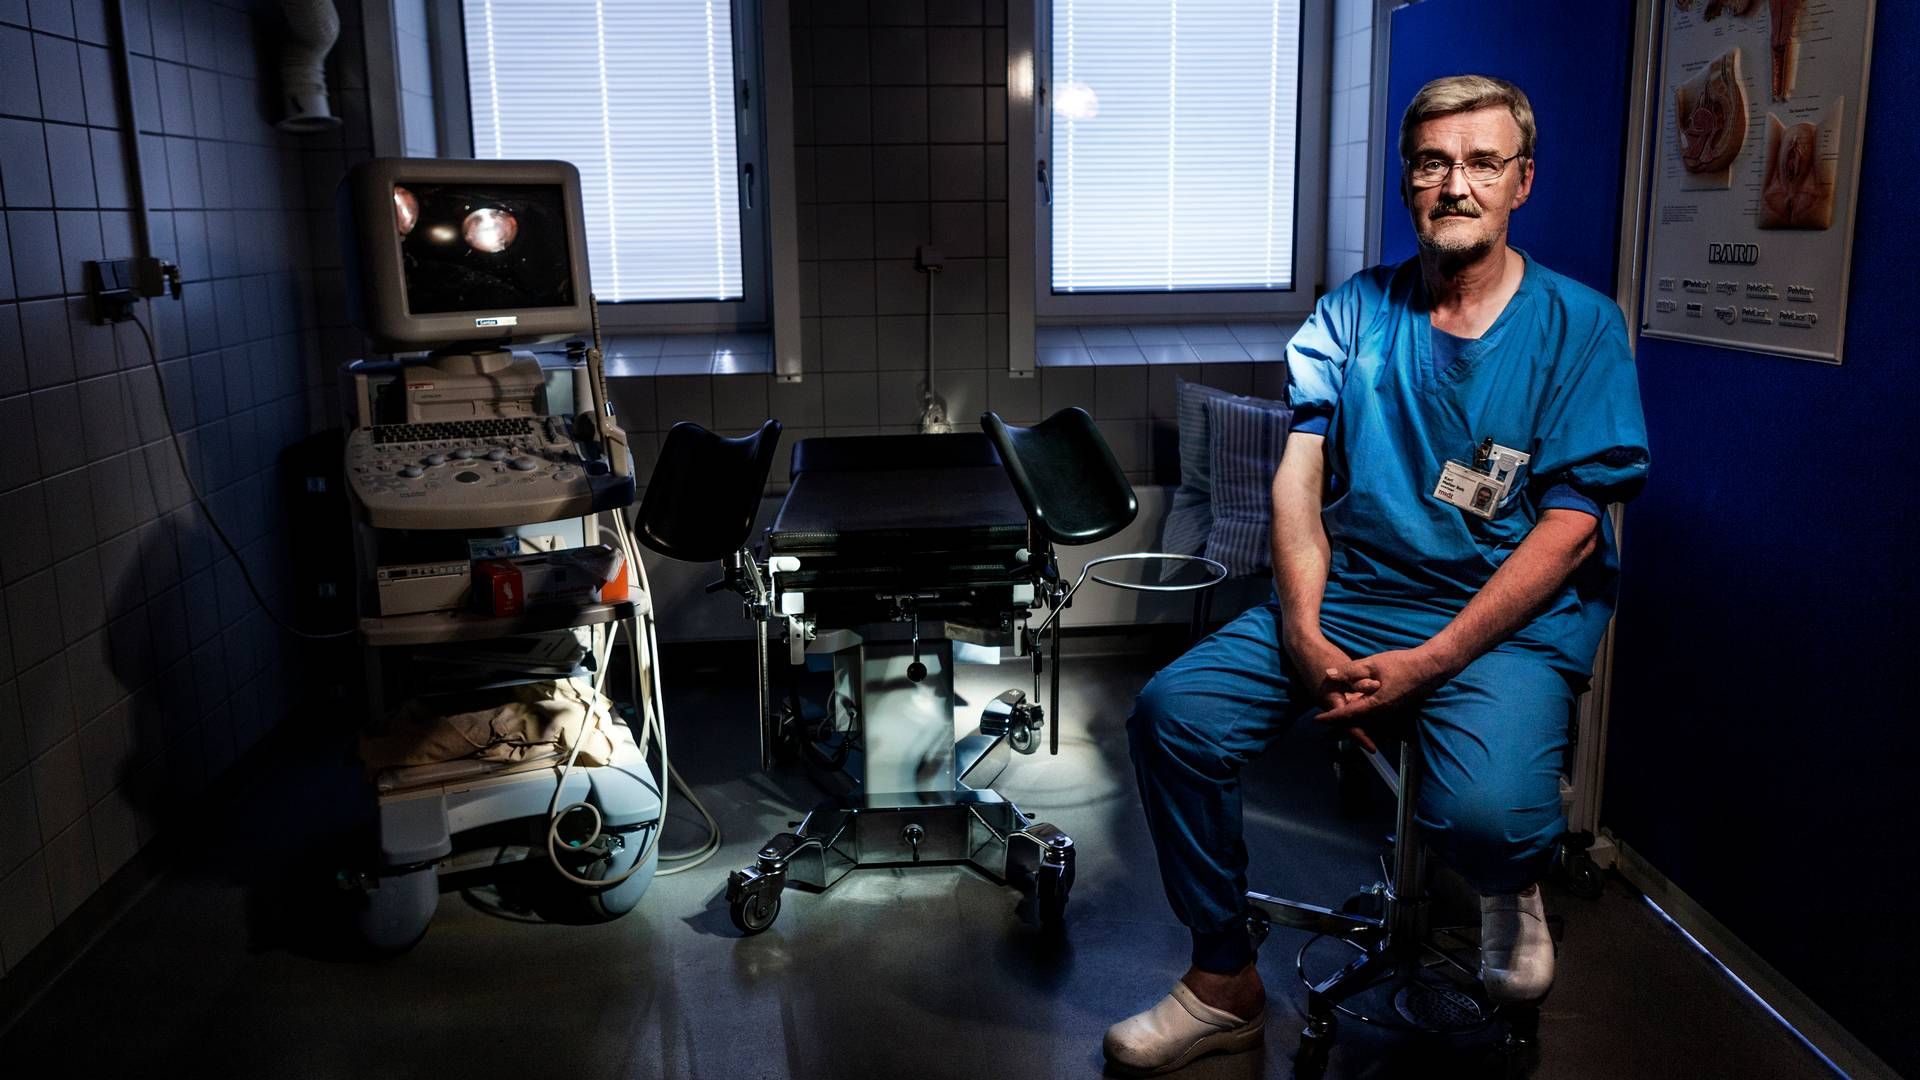 Karl Møller Bek, urogynækolog og overlæge ved Aarhus Universitetshospital, efterlyser klare linjer for, hvad der er en fejl ved medicinsk udstyr. | Foto: Mikkel Berg Pedersen